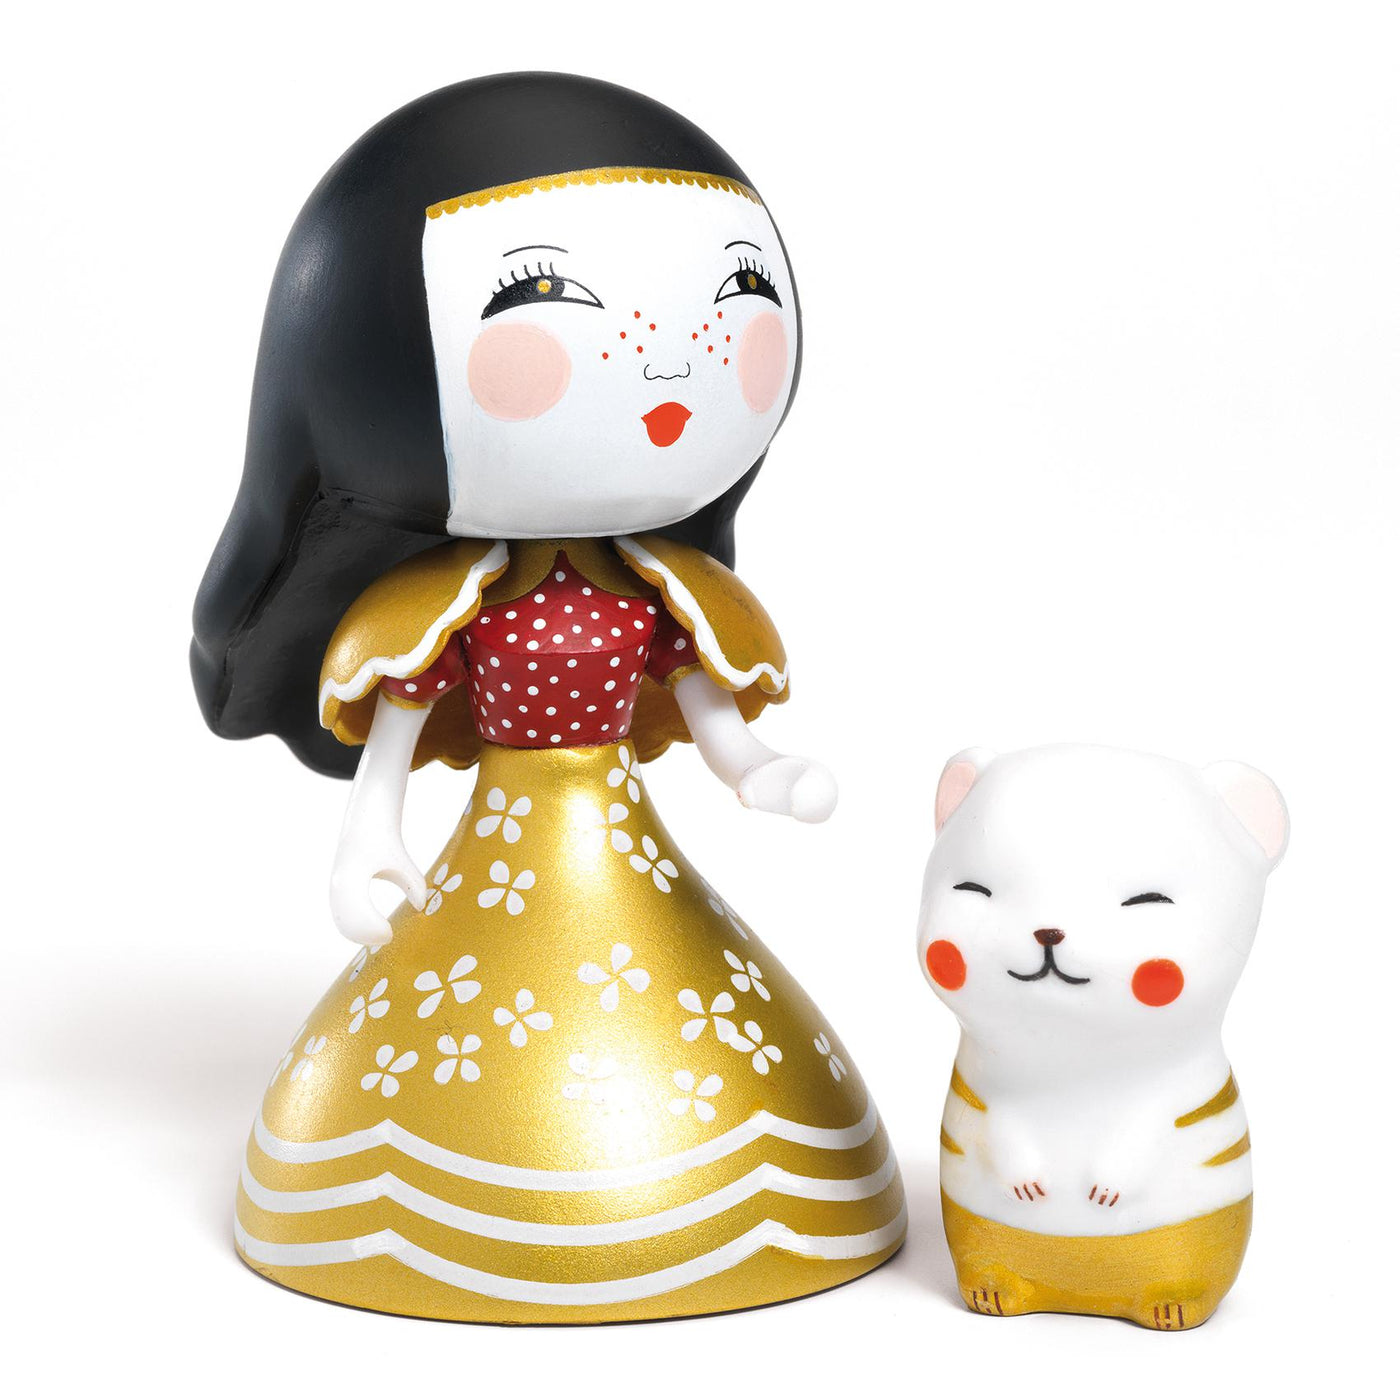 Princesses - Mona & Moon - Imaginary World - Arty Toys